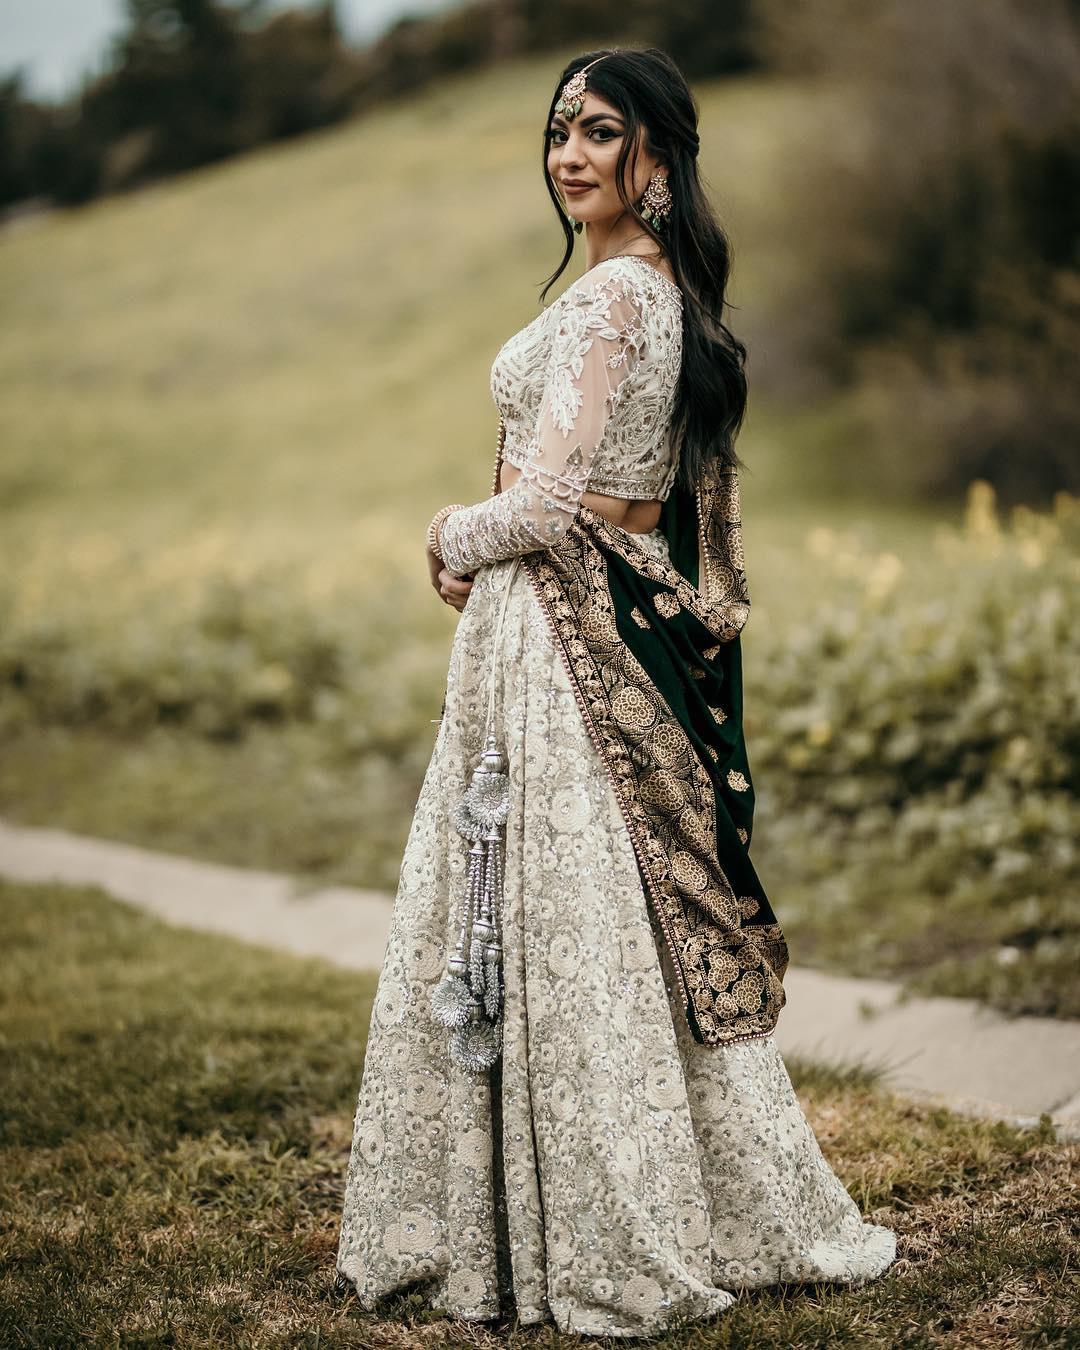 Pakistani Lehenga Dresses: Everything You Should Know